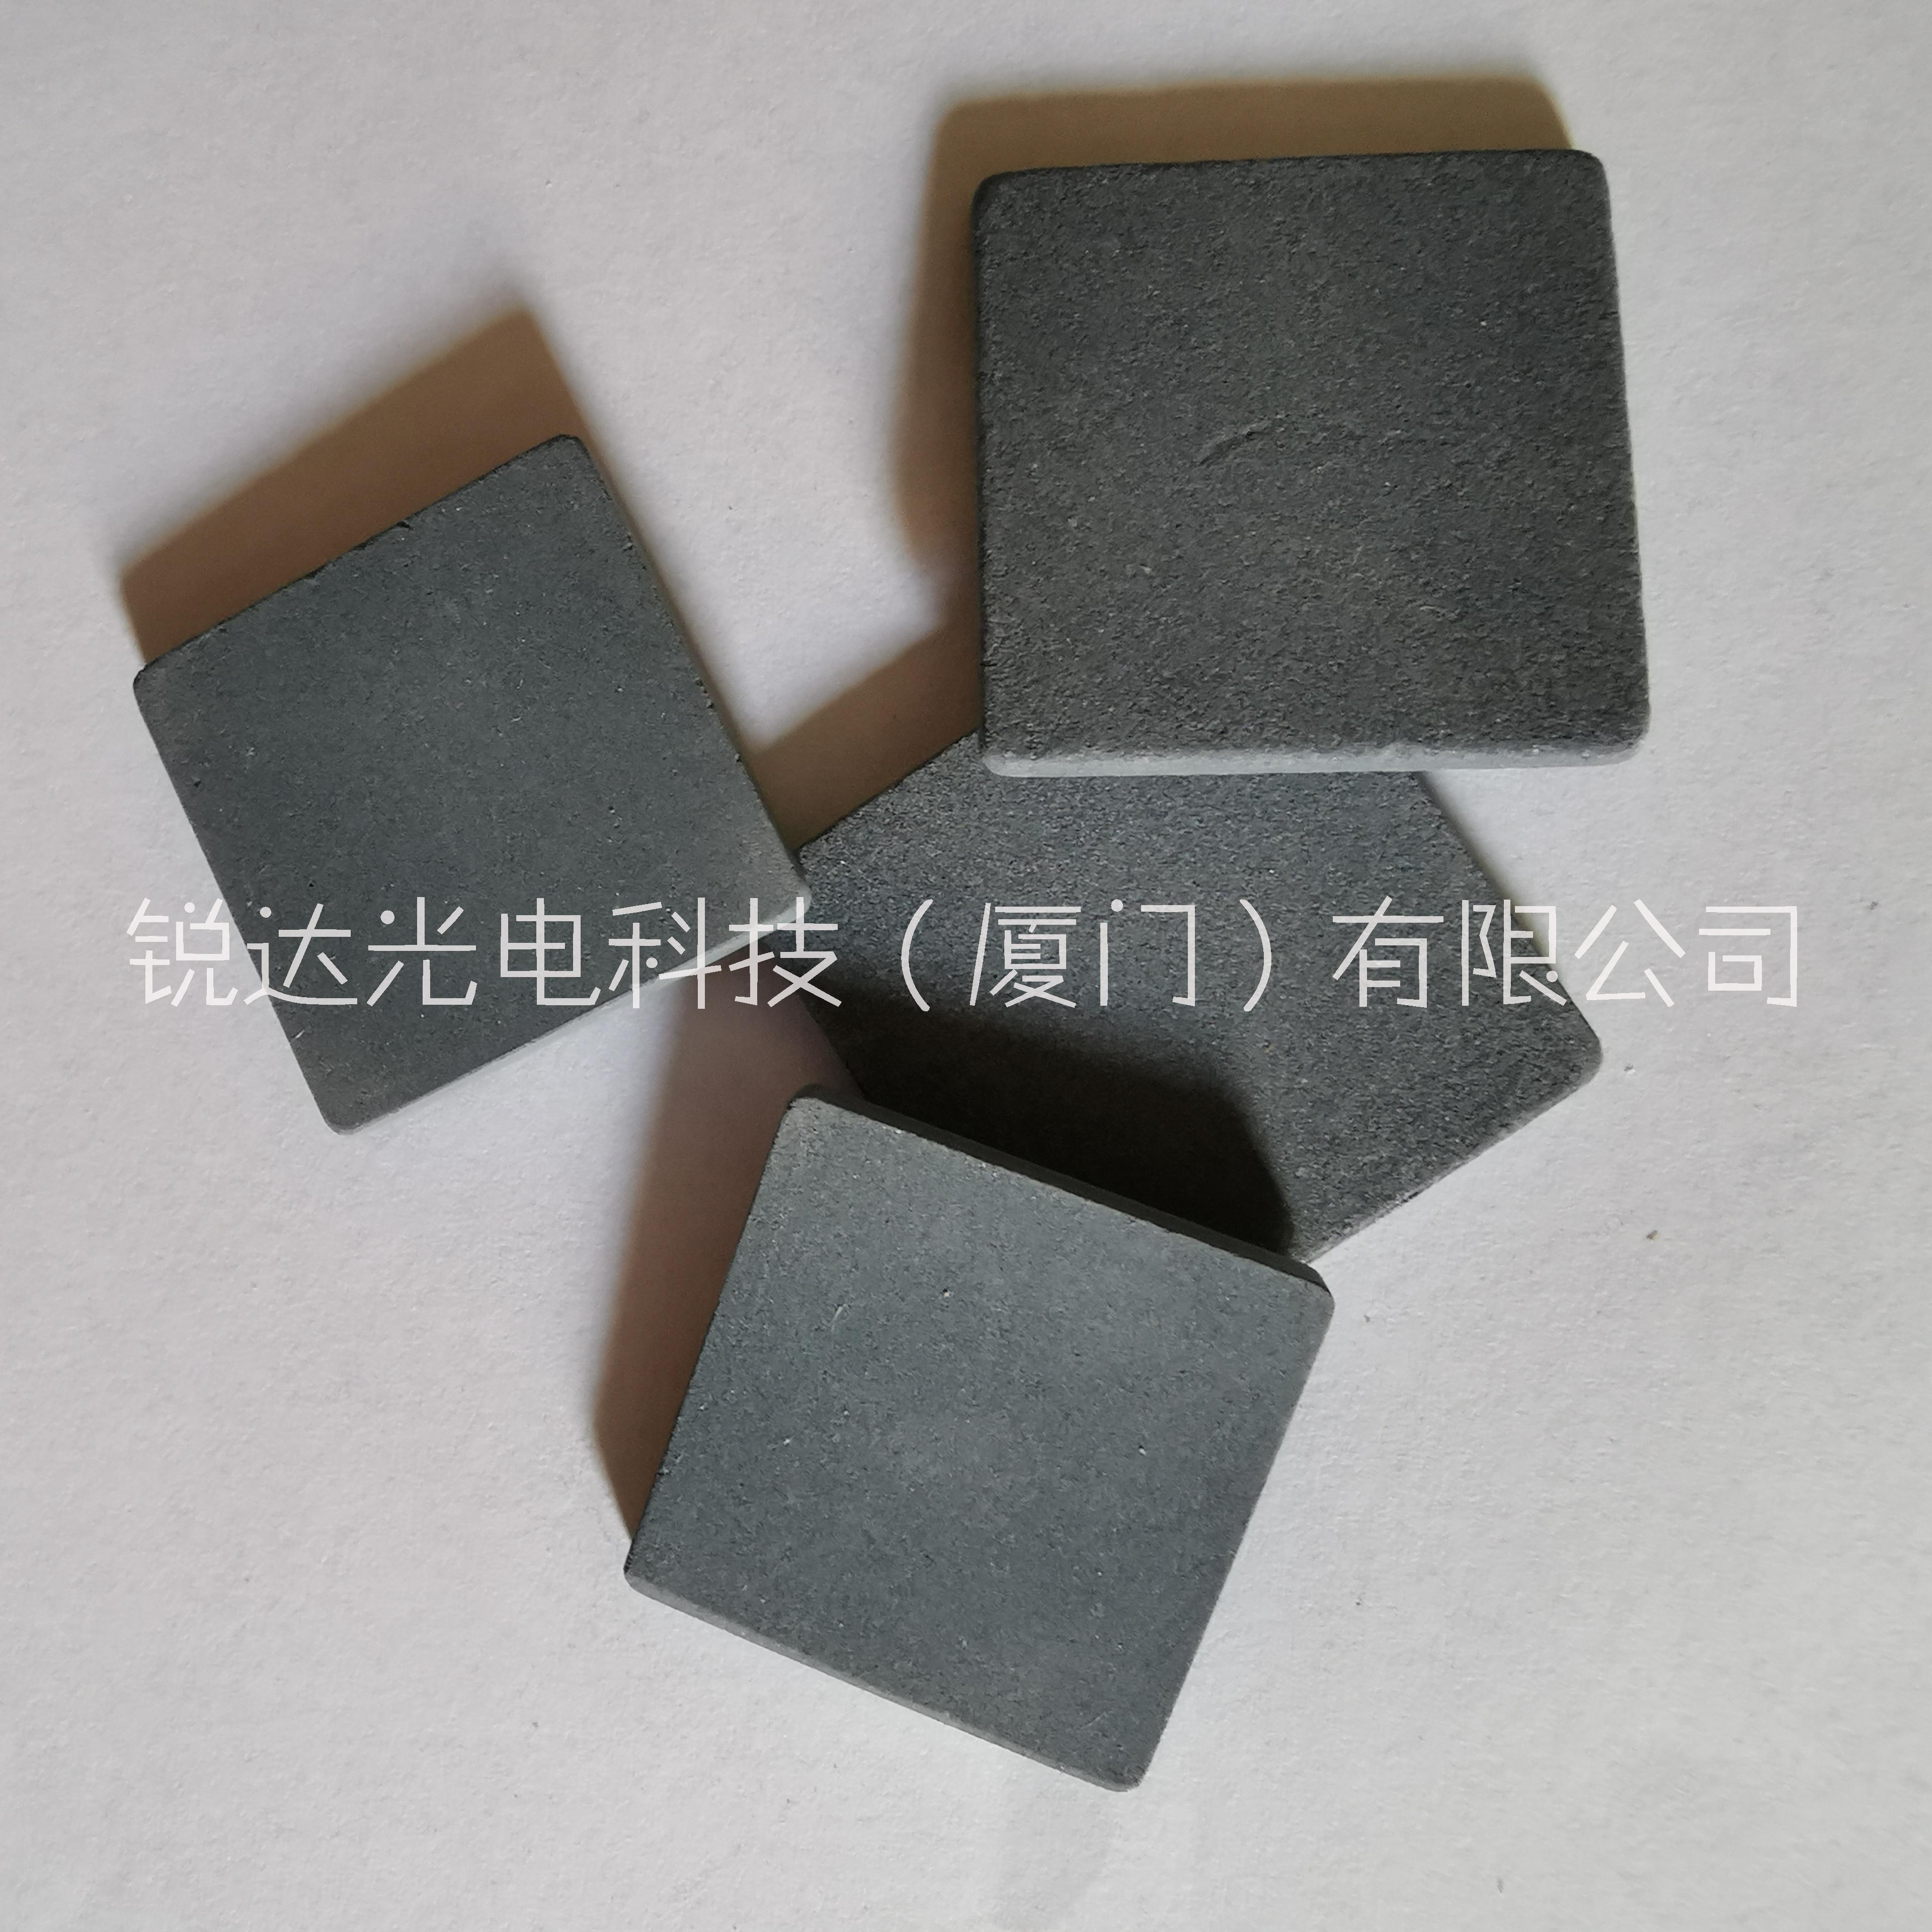 东莞工控机开发板 主板芯片陶瓷散热片